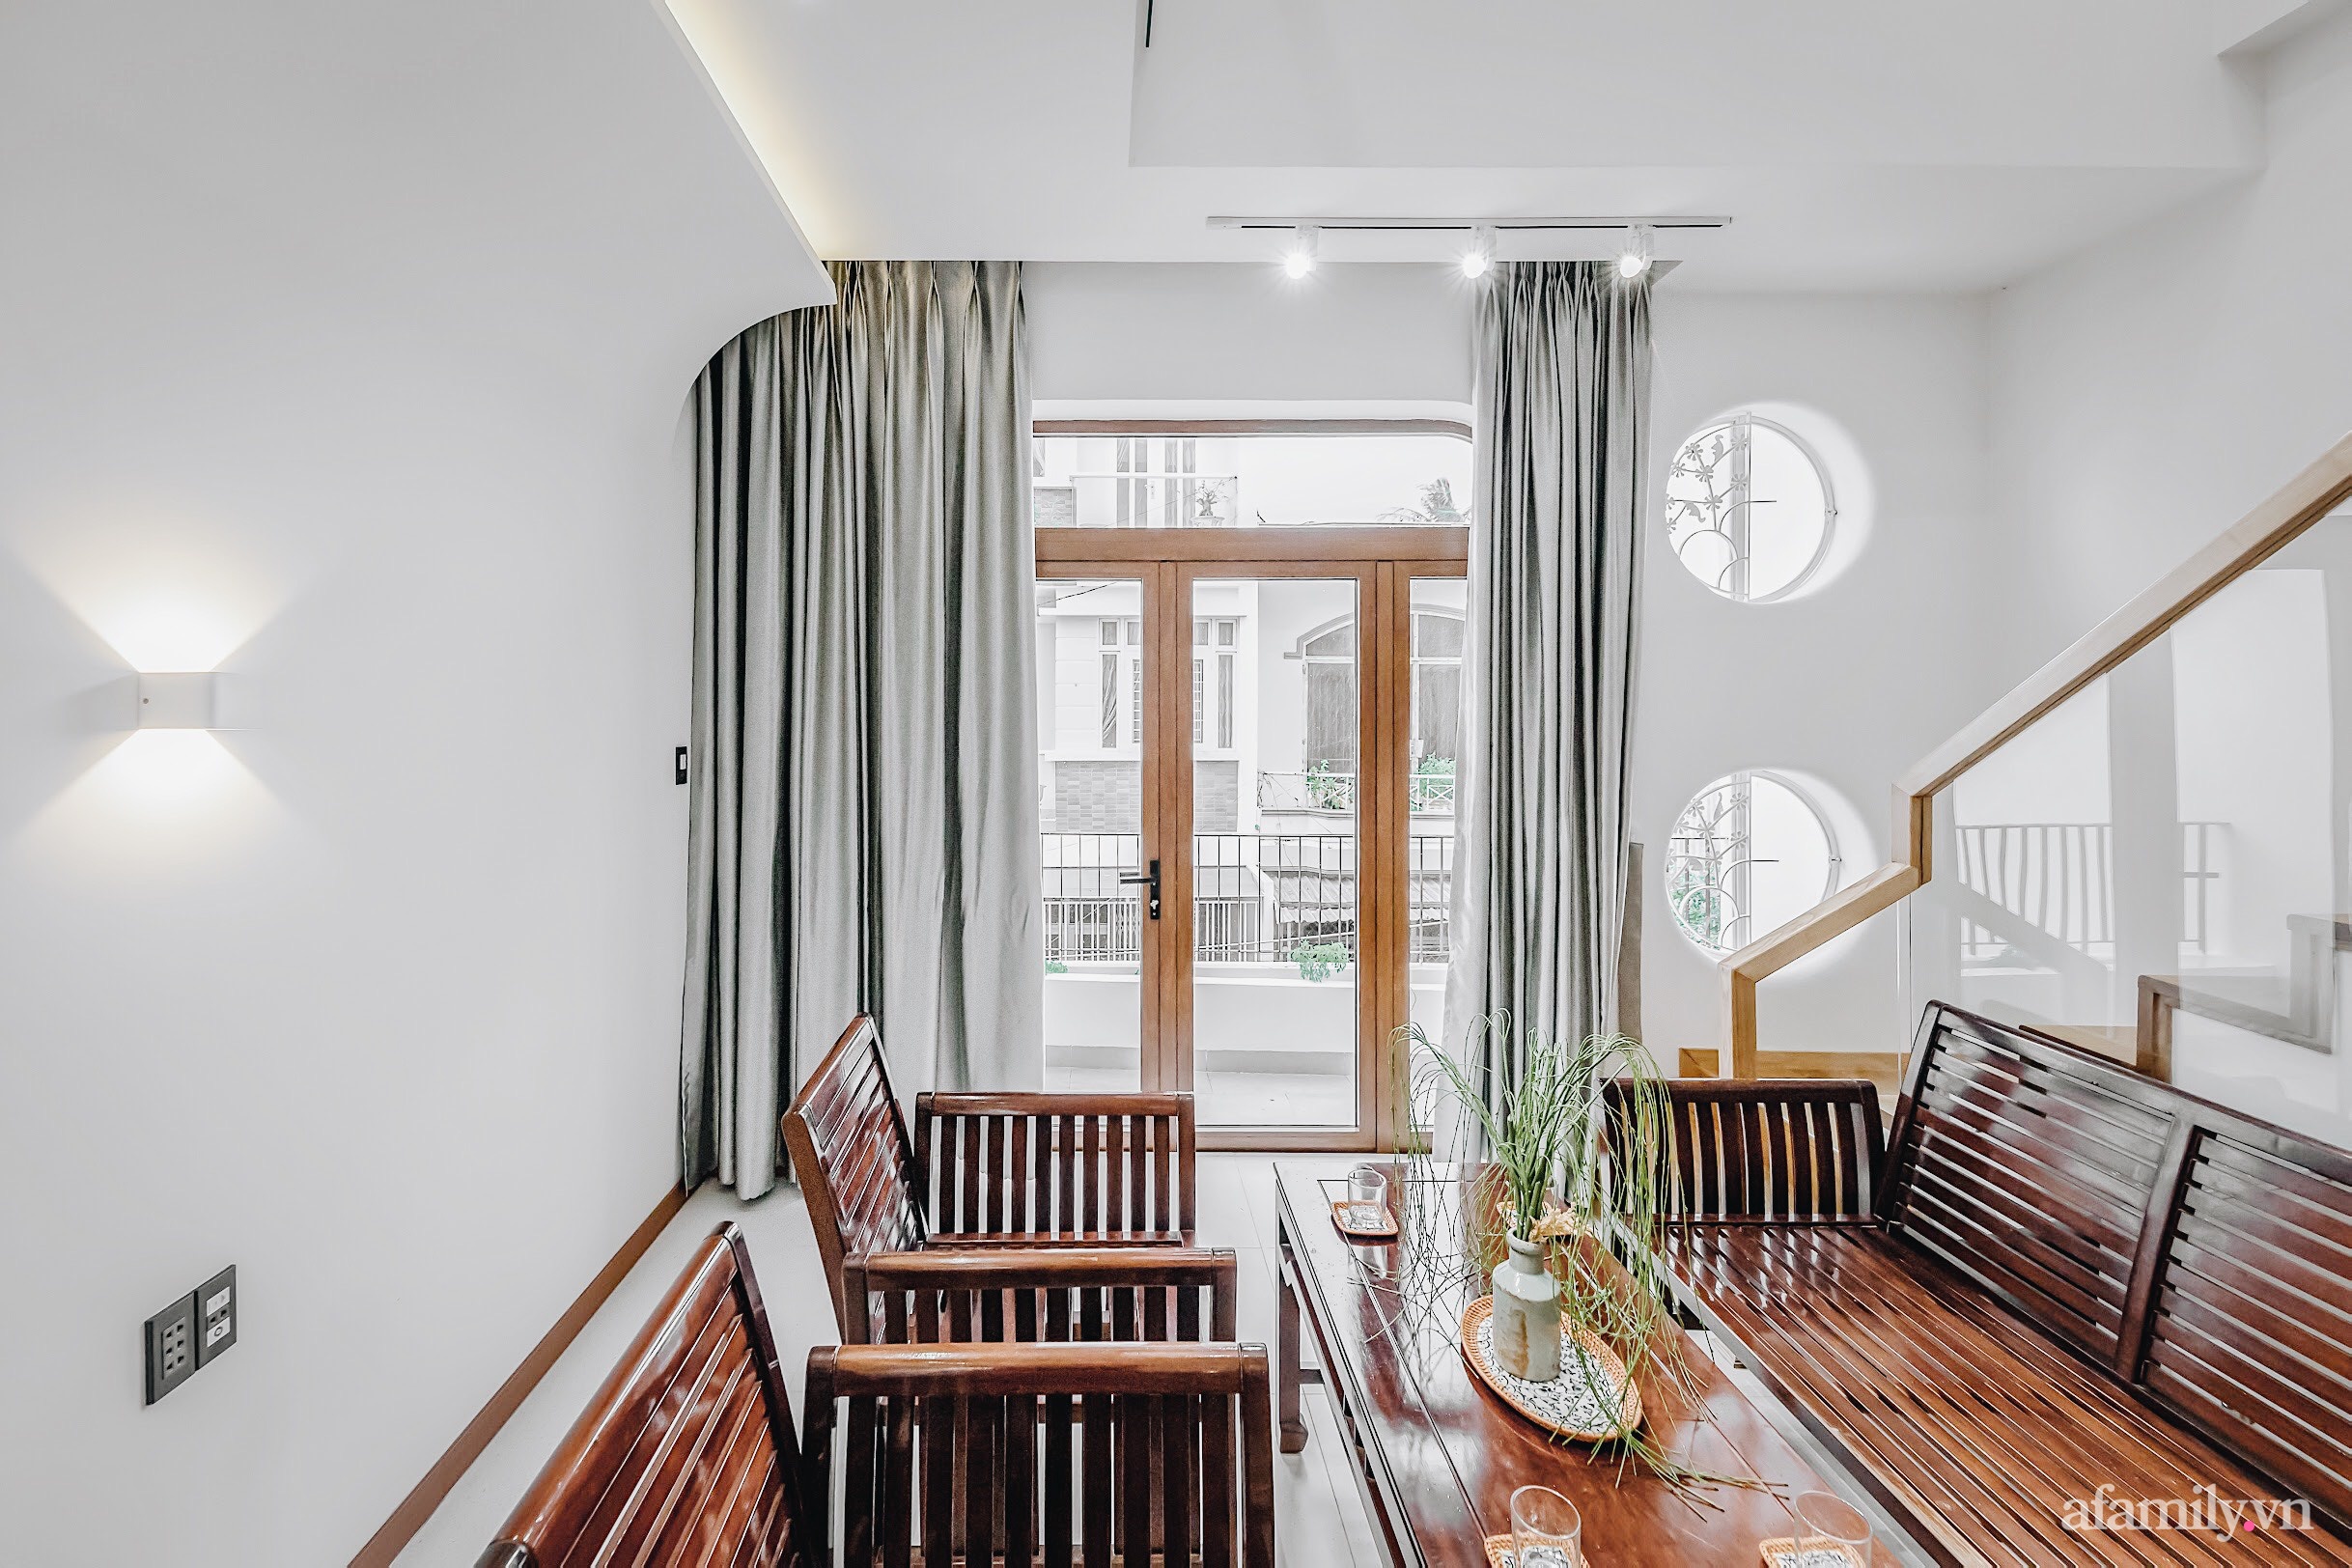 Căn nhà màu trắng đón nắng ngập tràn theo phong cách tối giản có chi phí gần 3 tỷ đồng của con trai xây tặng bố mẹ ở Nha Trang - Ảnh 24.